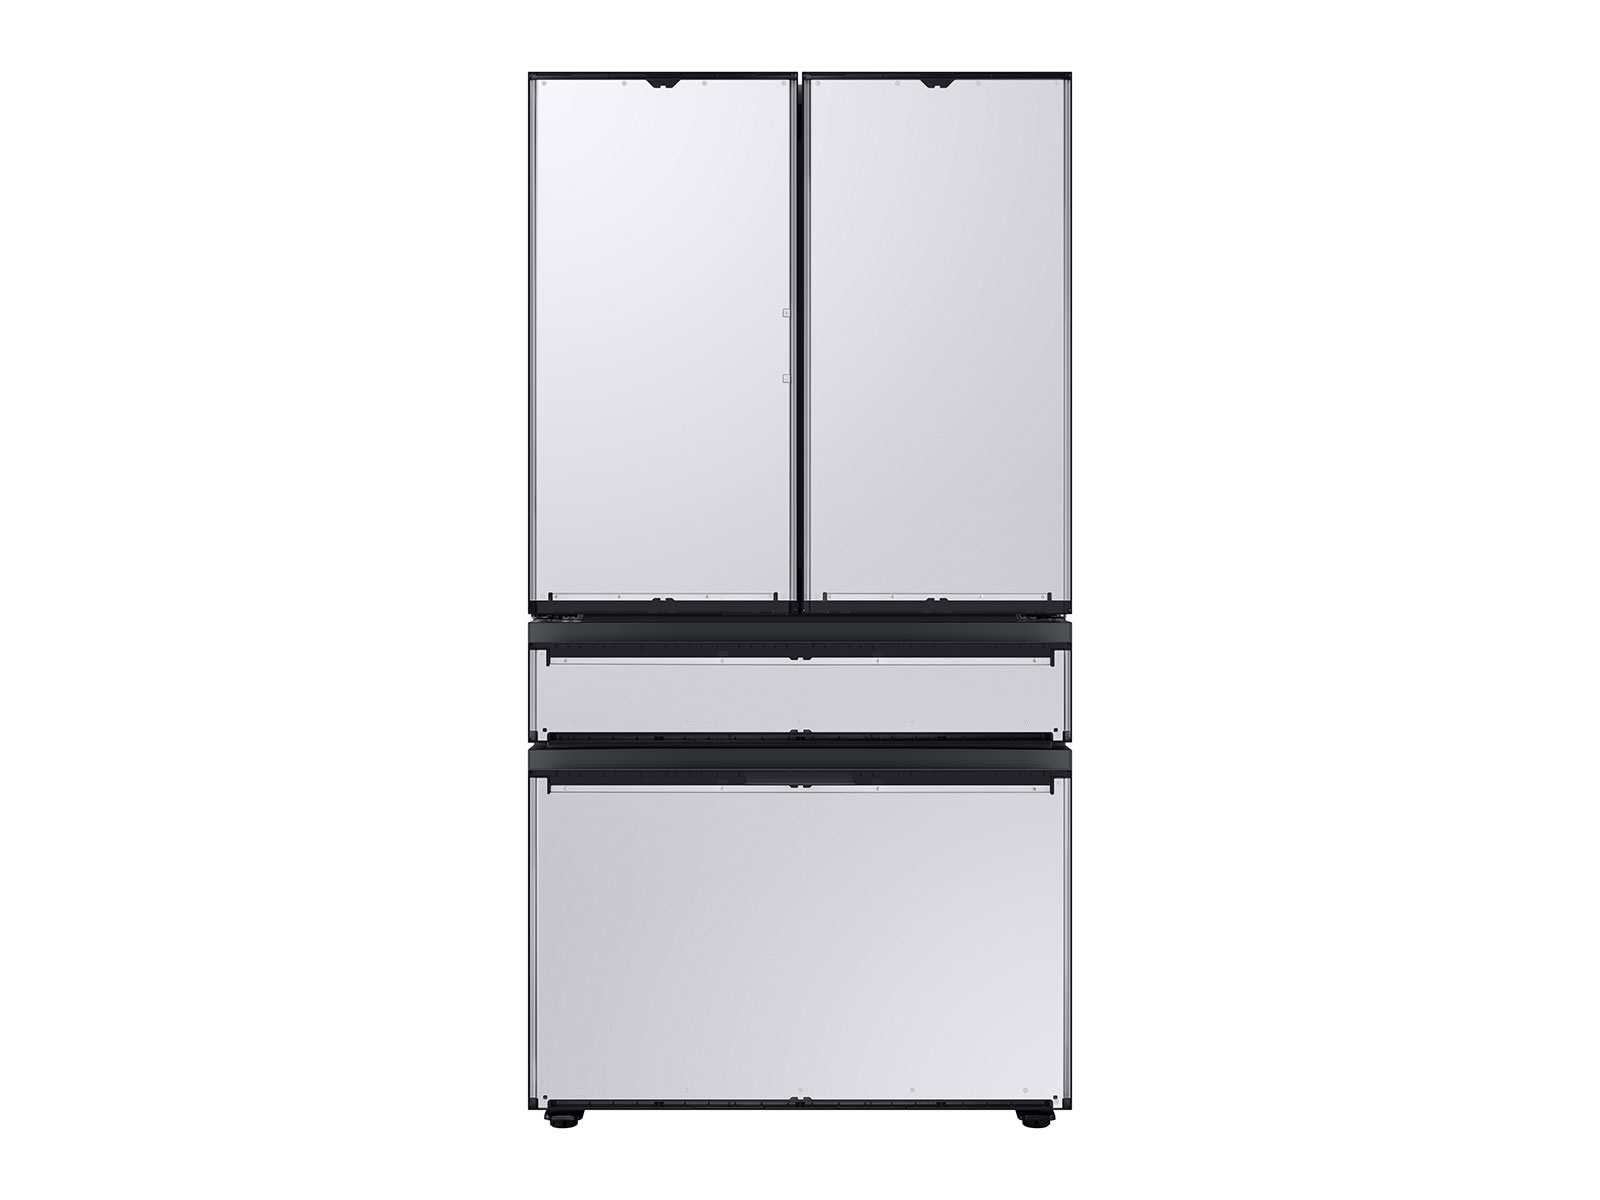 Bespoke 4-Door French Door Refrigerator (23 cu. ft.) with AutoFill Water Pitcher and Customizable Door Panel Colors